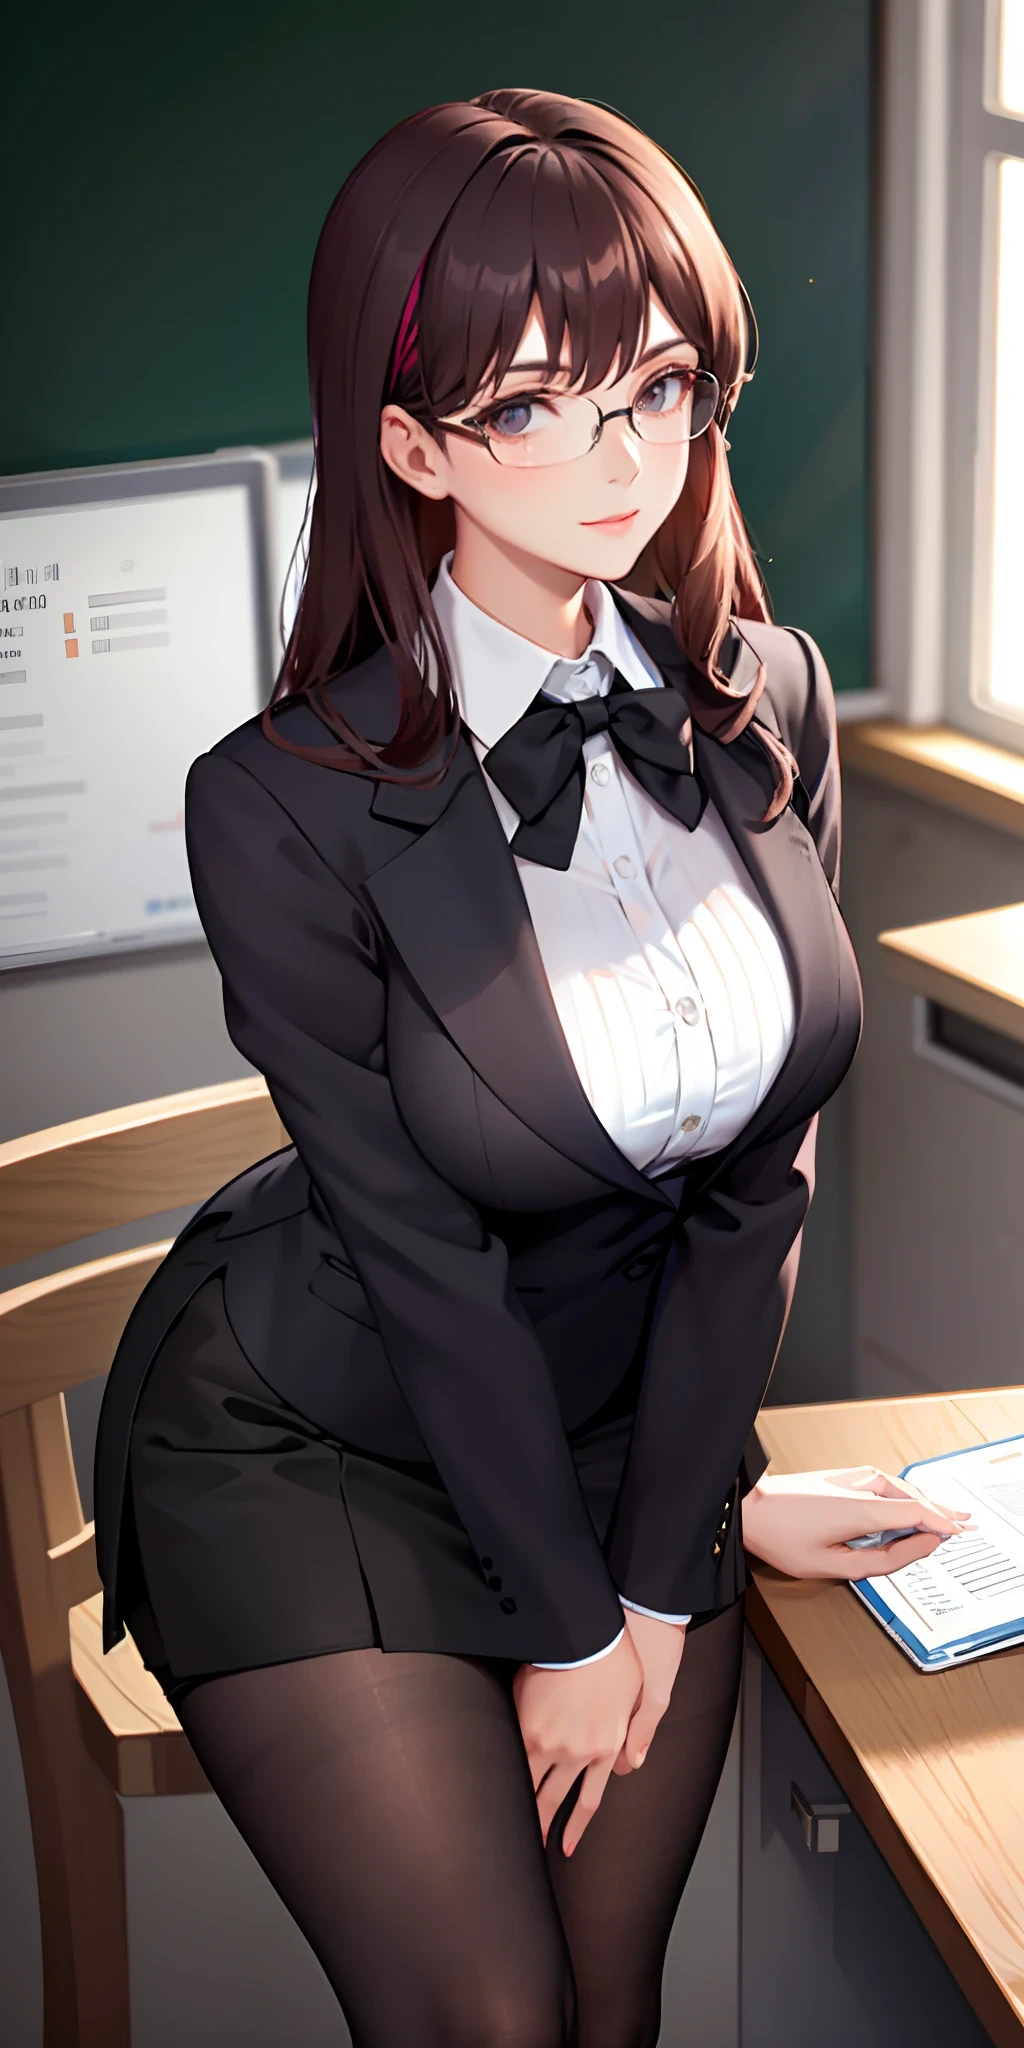 一位戴着眼镜的优雅而老练的老师俏皮地打扮成一位办公室女士，穿着短裙和黑色长袜, 露出她丰满的胸部和